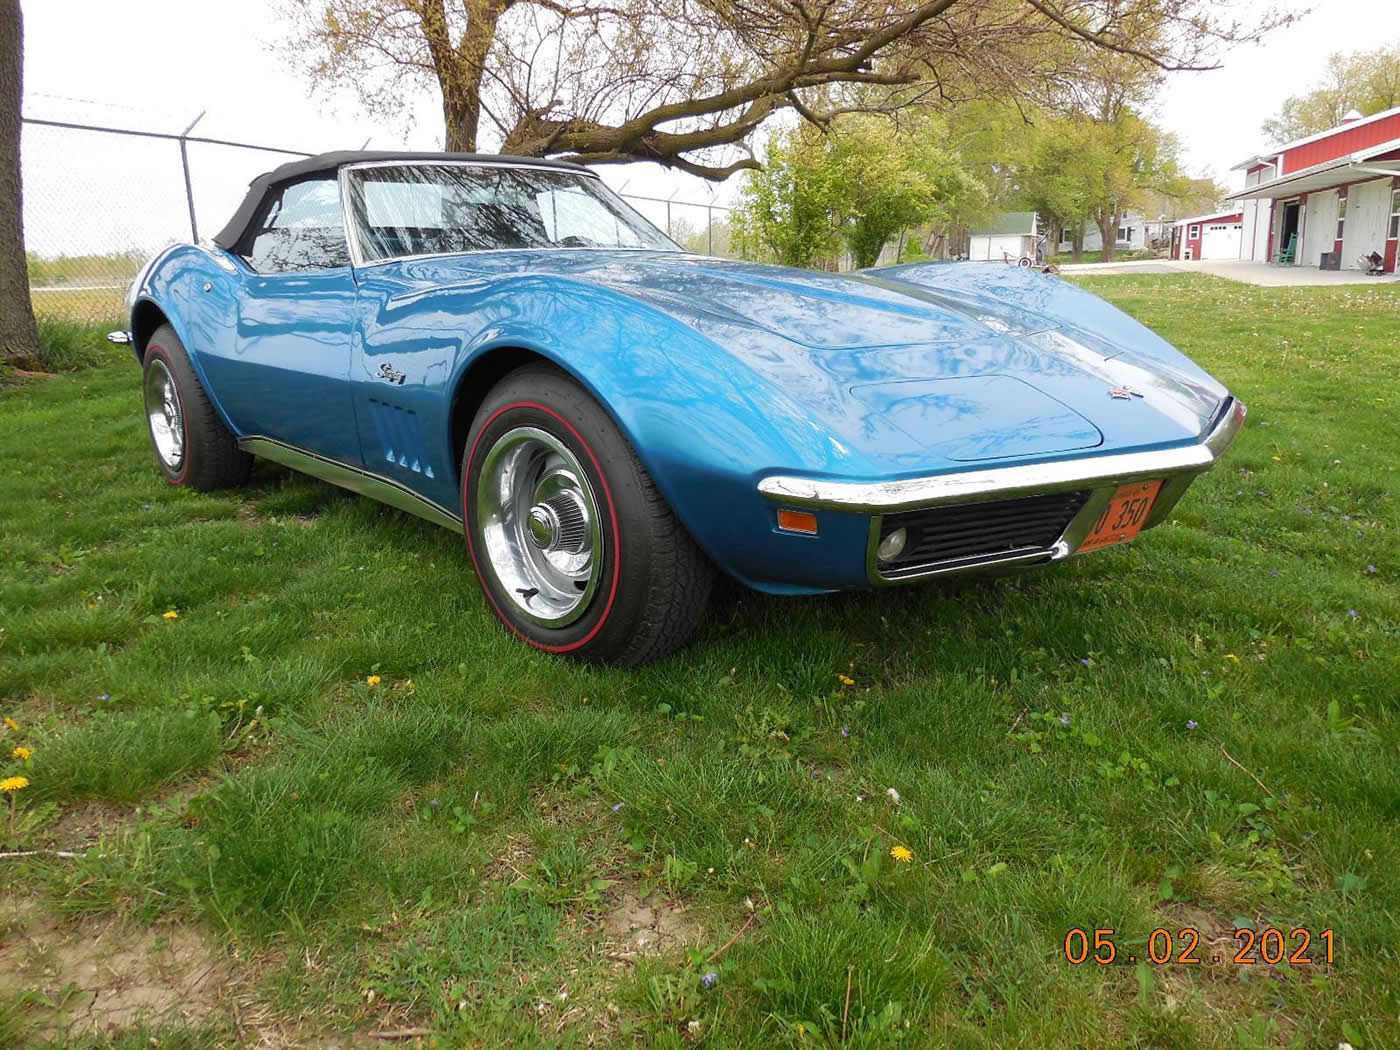 1969 Corvette Convertible in LeMans Blue